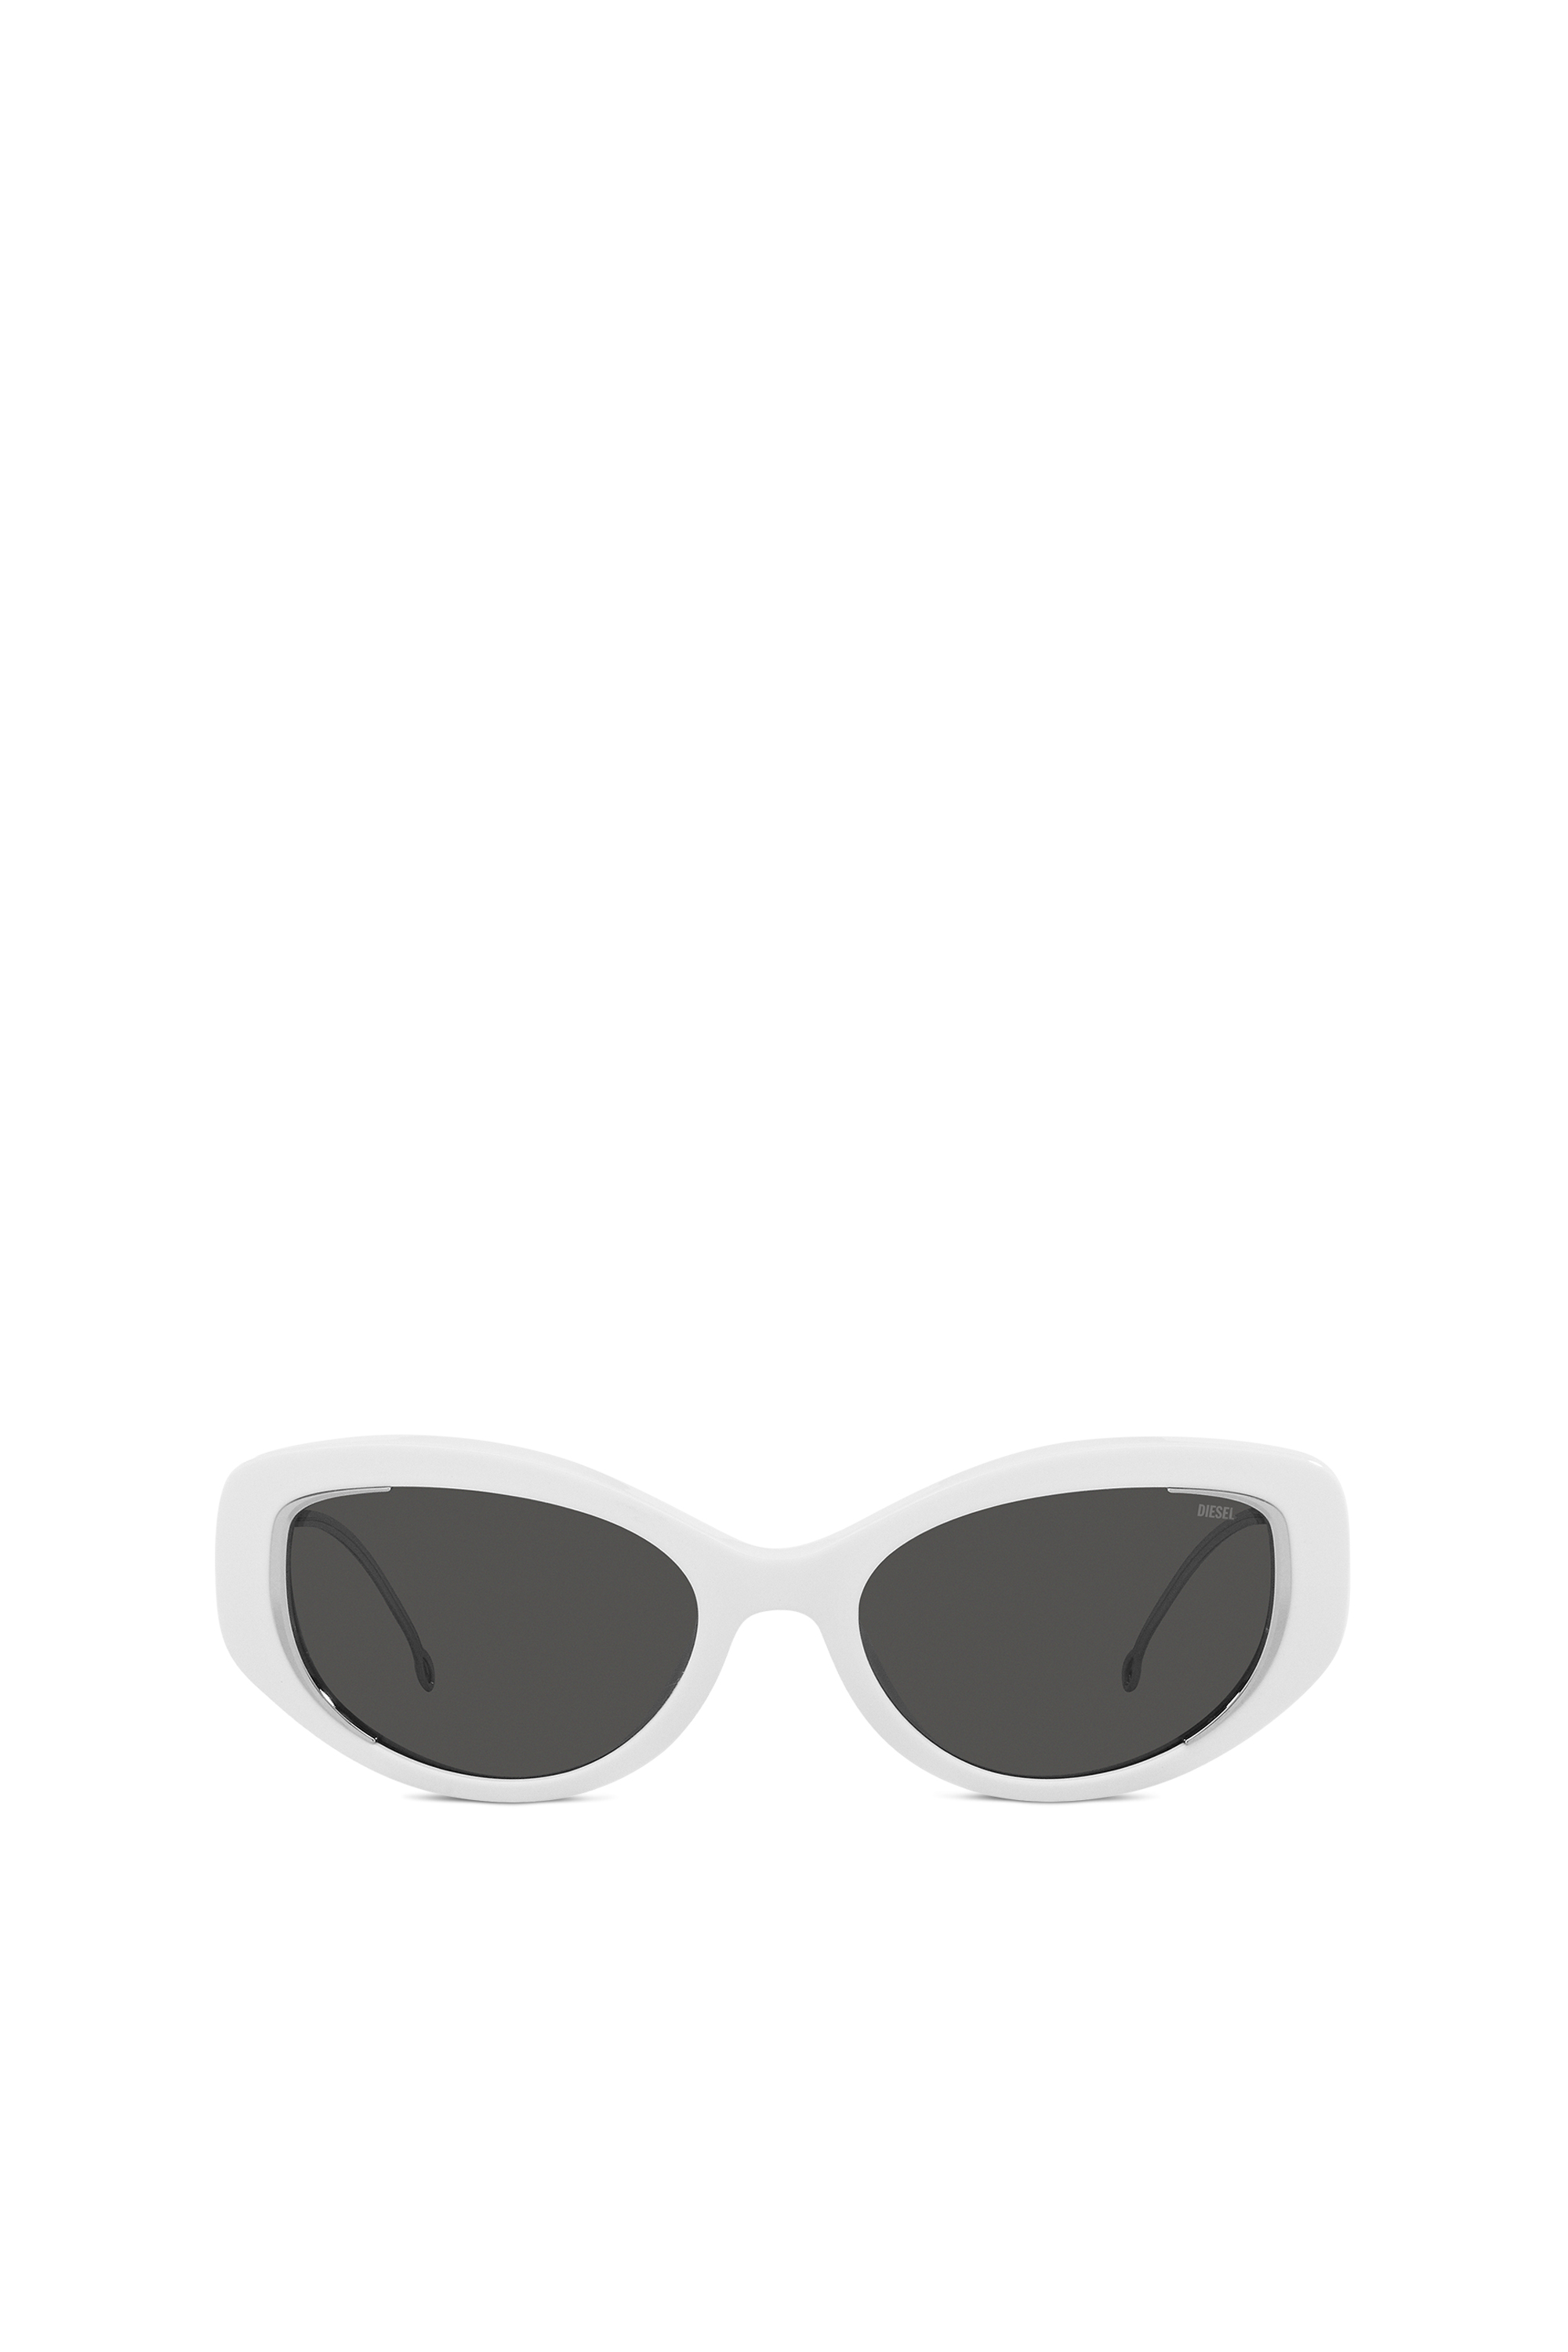 Diesel - Gafas modelo de ojo de gato - Gafas de sol - Unisex - Blanco